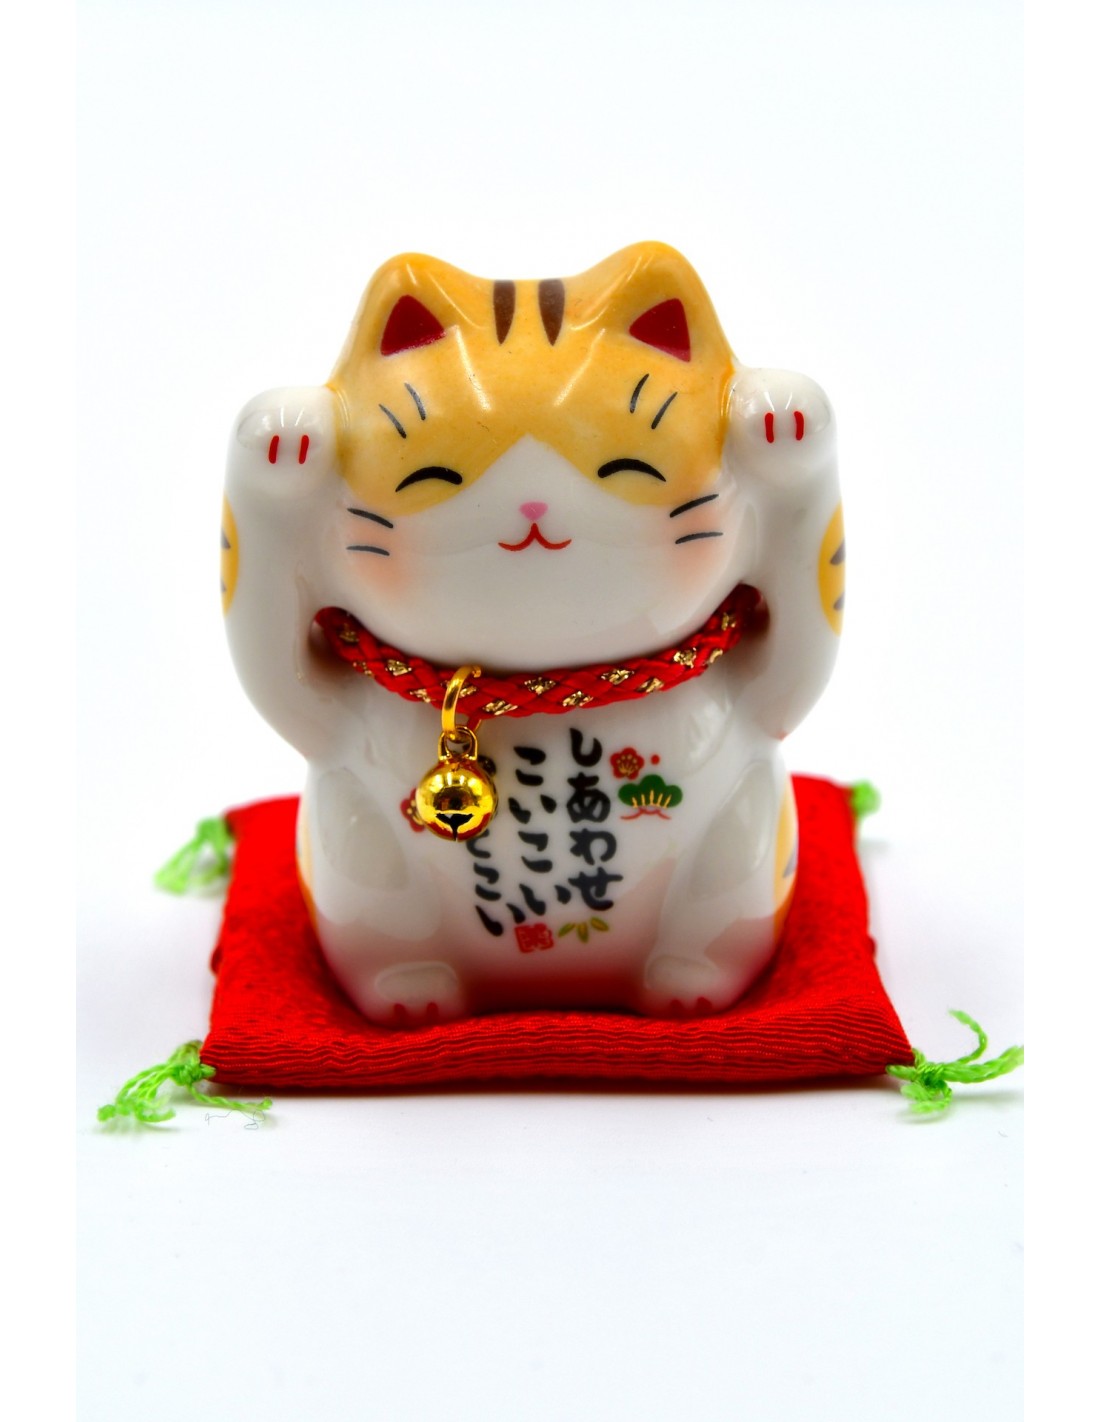 Tutto sul Maneki neko, il gatto giapponese portafortuna